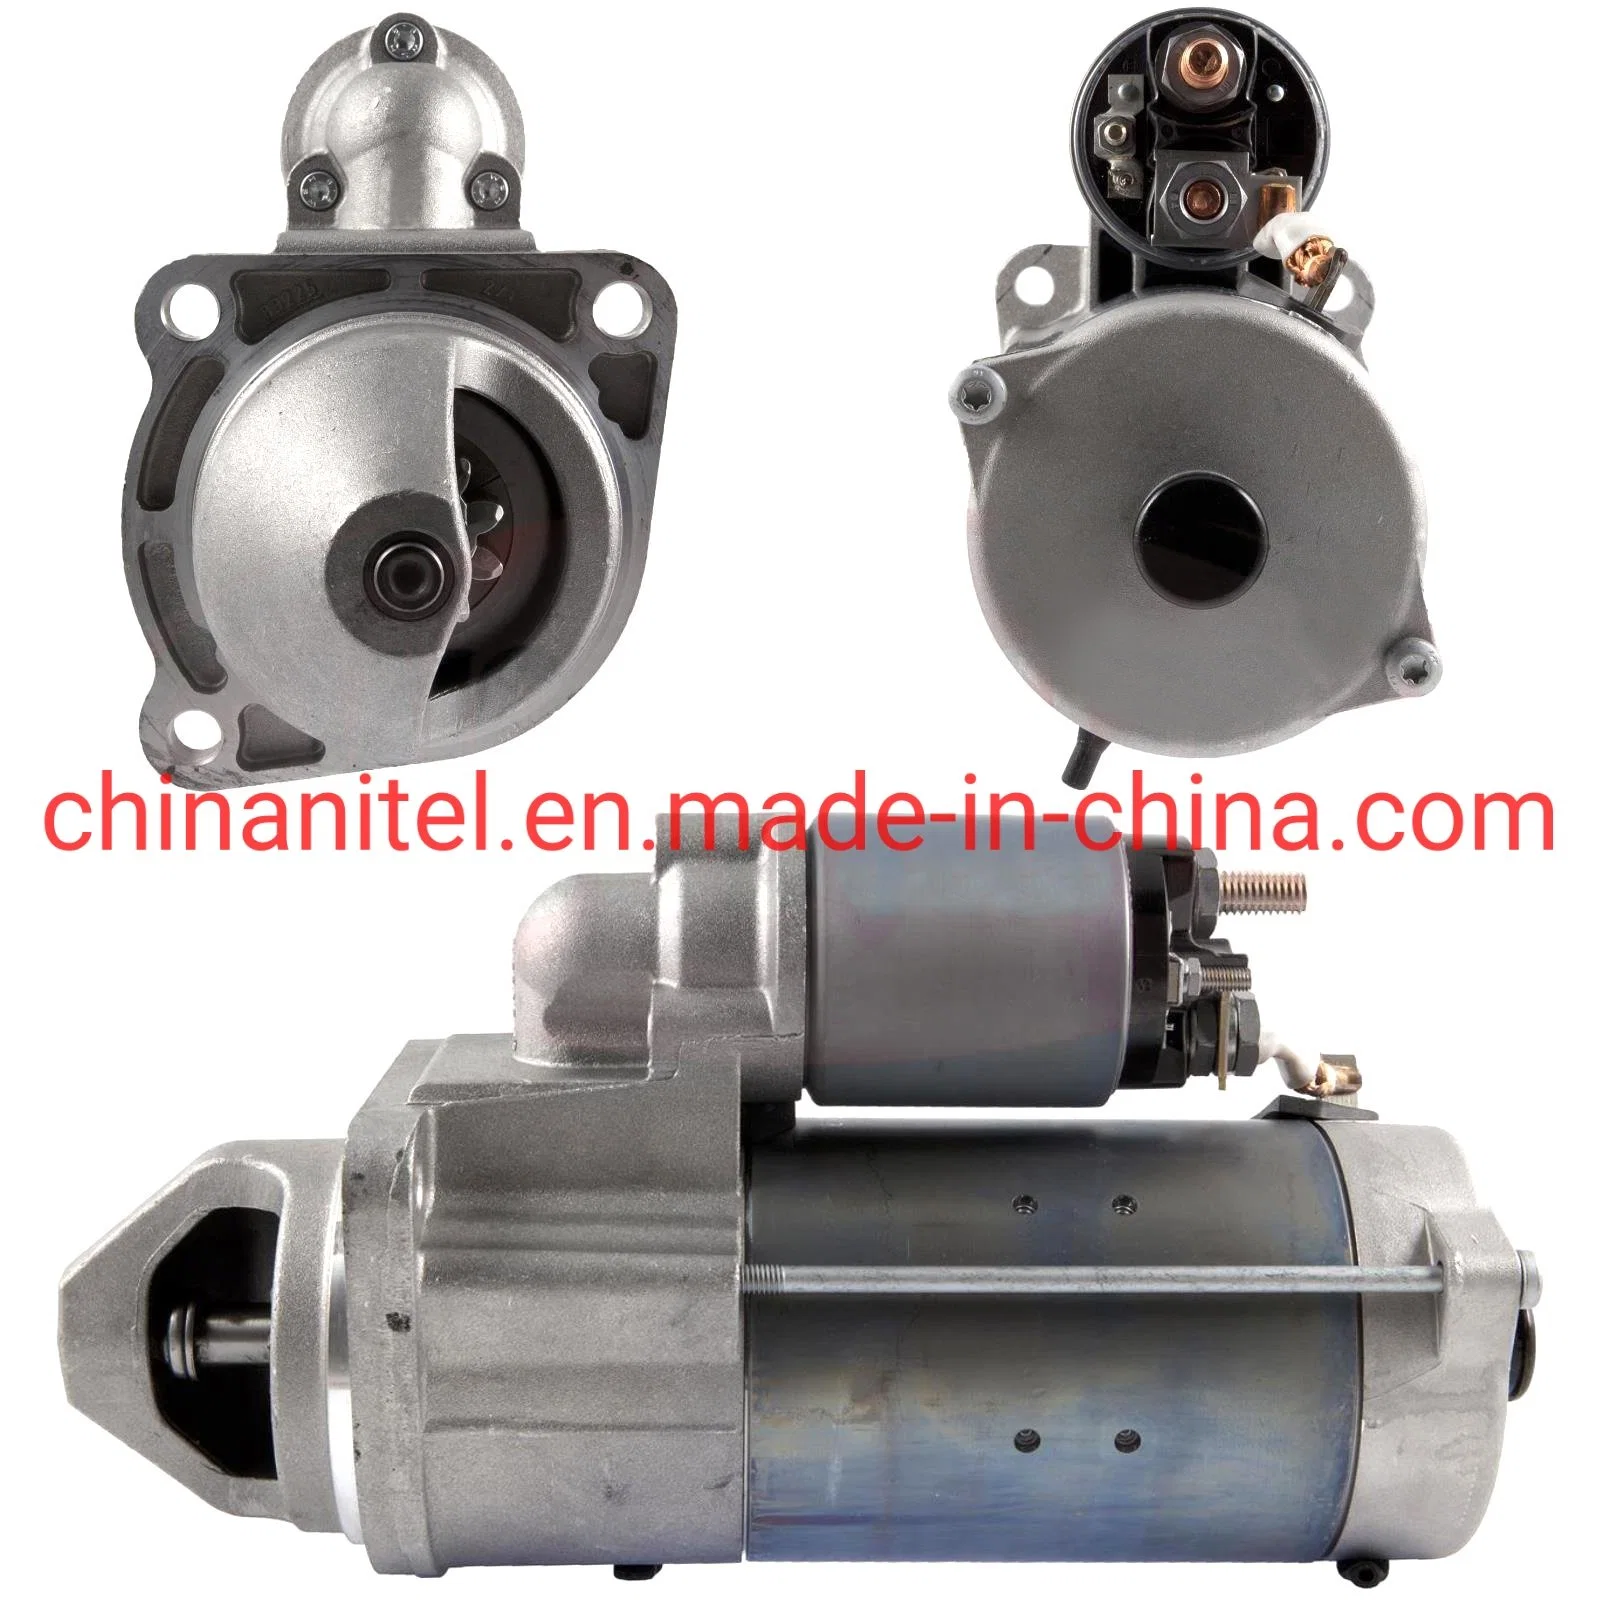 محرك Nitai موتور بادئ الحركة تصنيع موتور Bosch موتور بادئ حركة بجهد 24 فولت في الصين محرك بادئ الحركة Bosch من طراز Rinault 0001231009